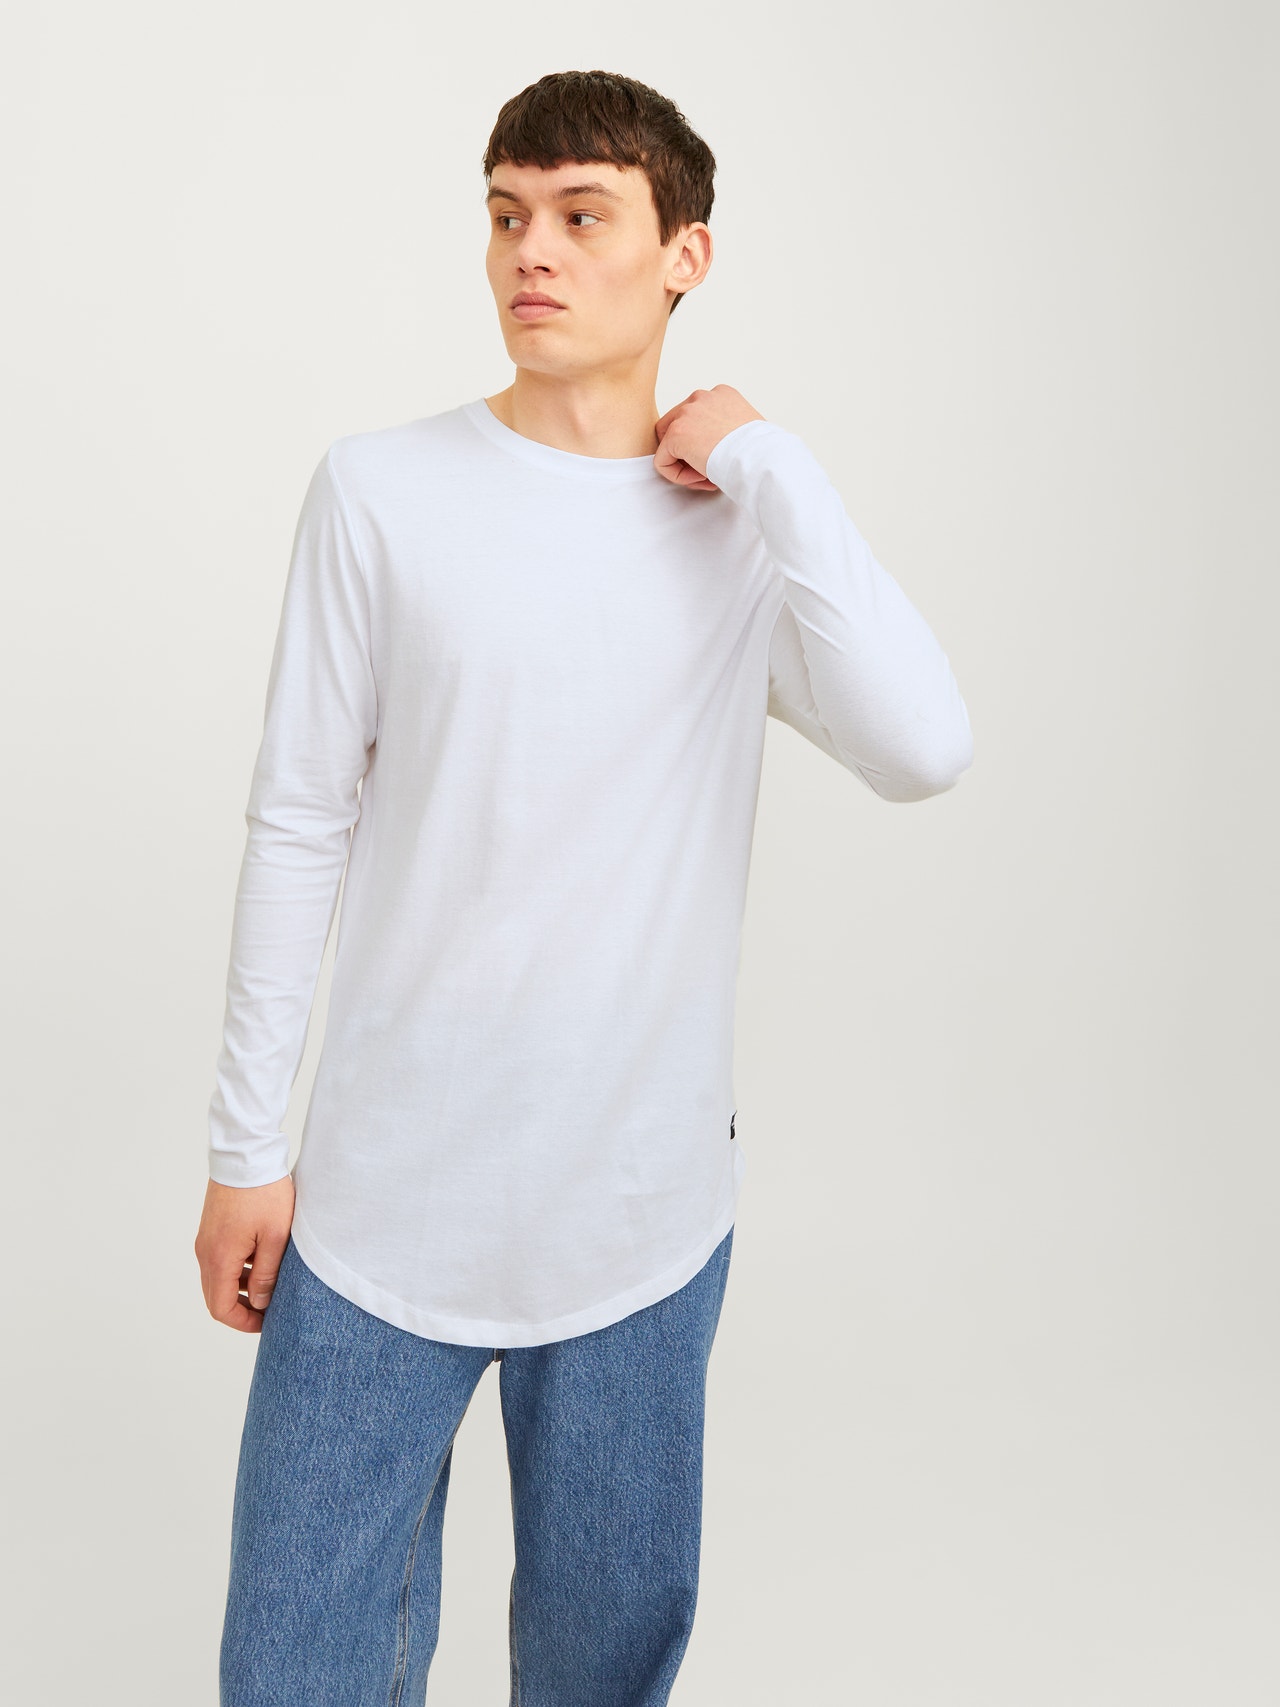 Jack & Jones Plain O-Neck T-shirt -White - 12190128